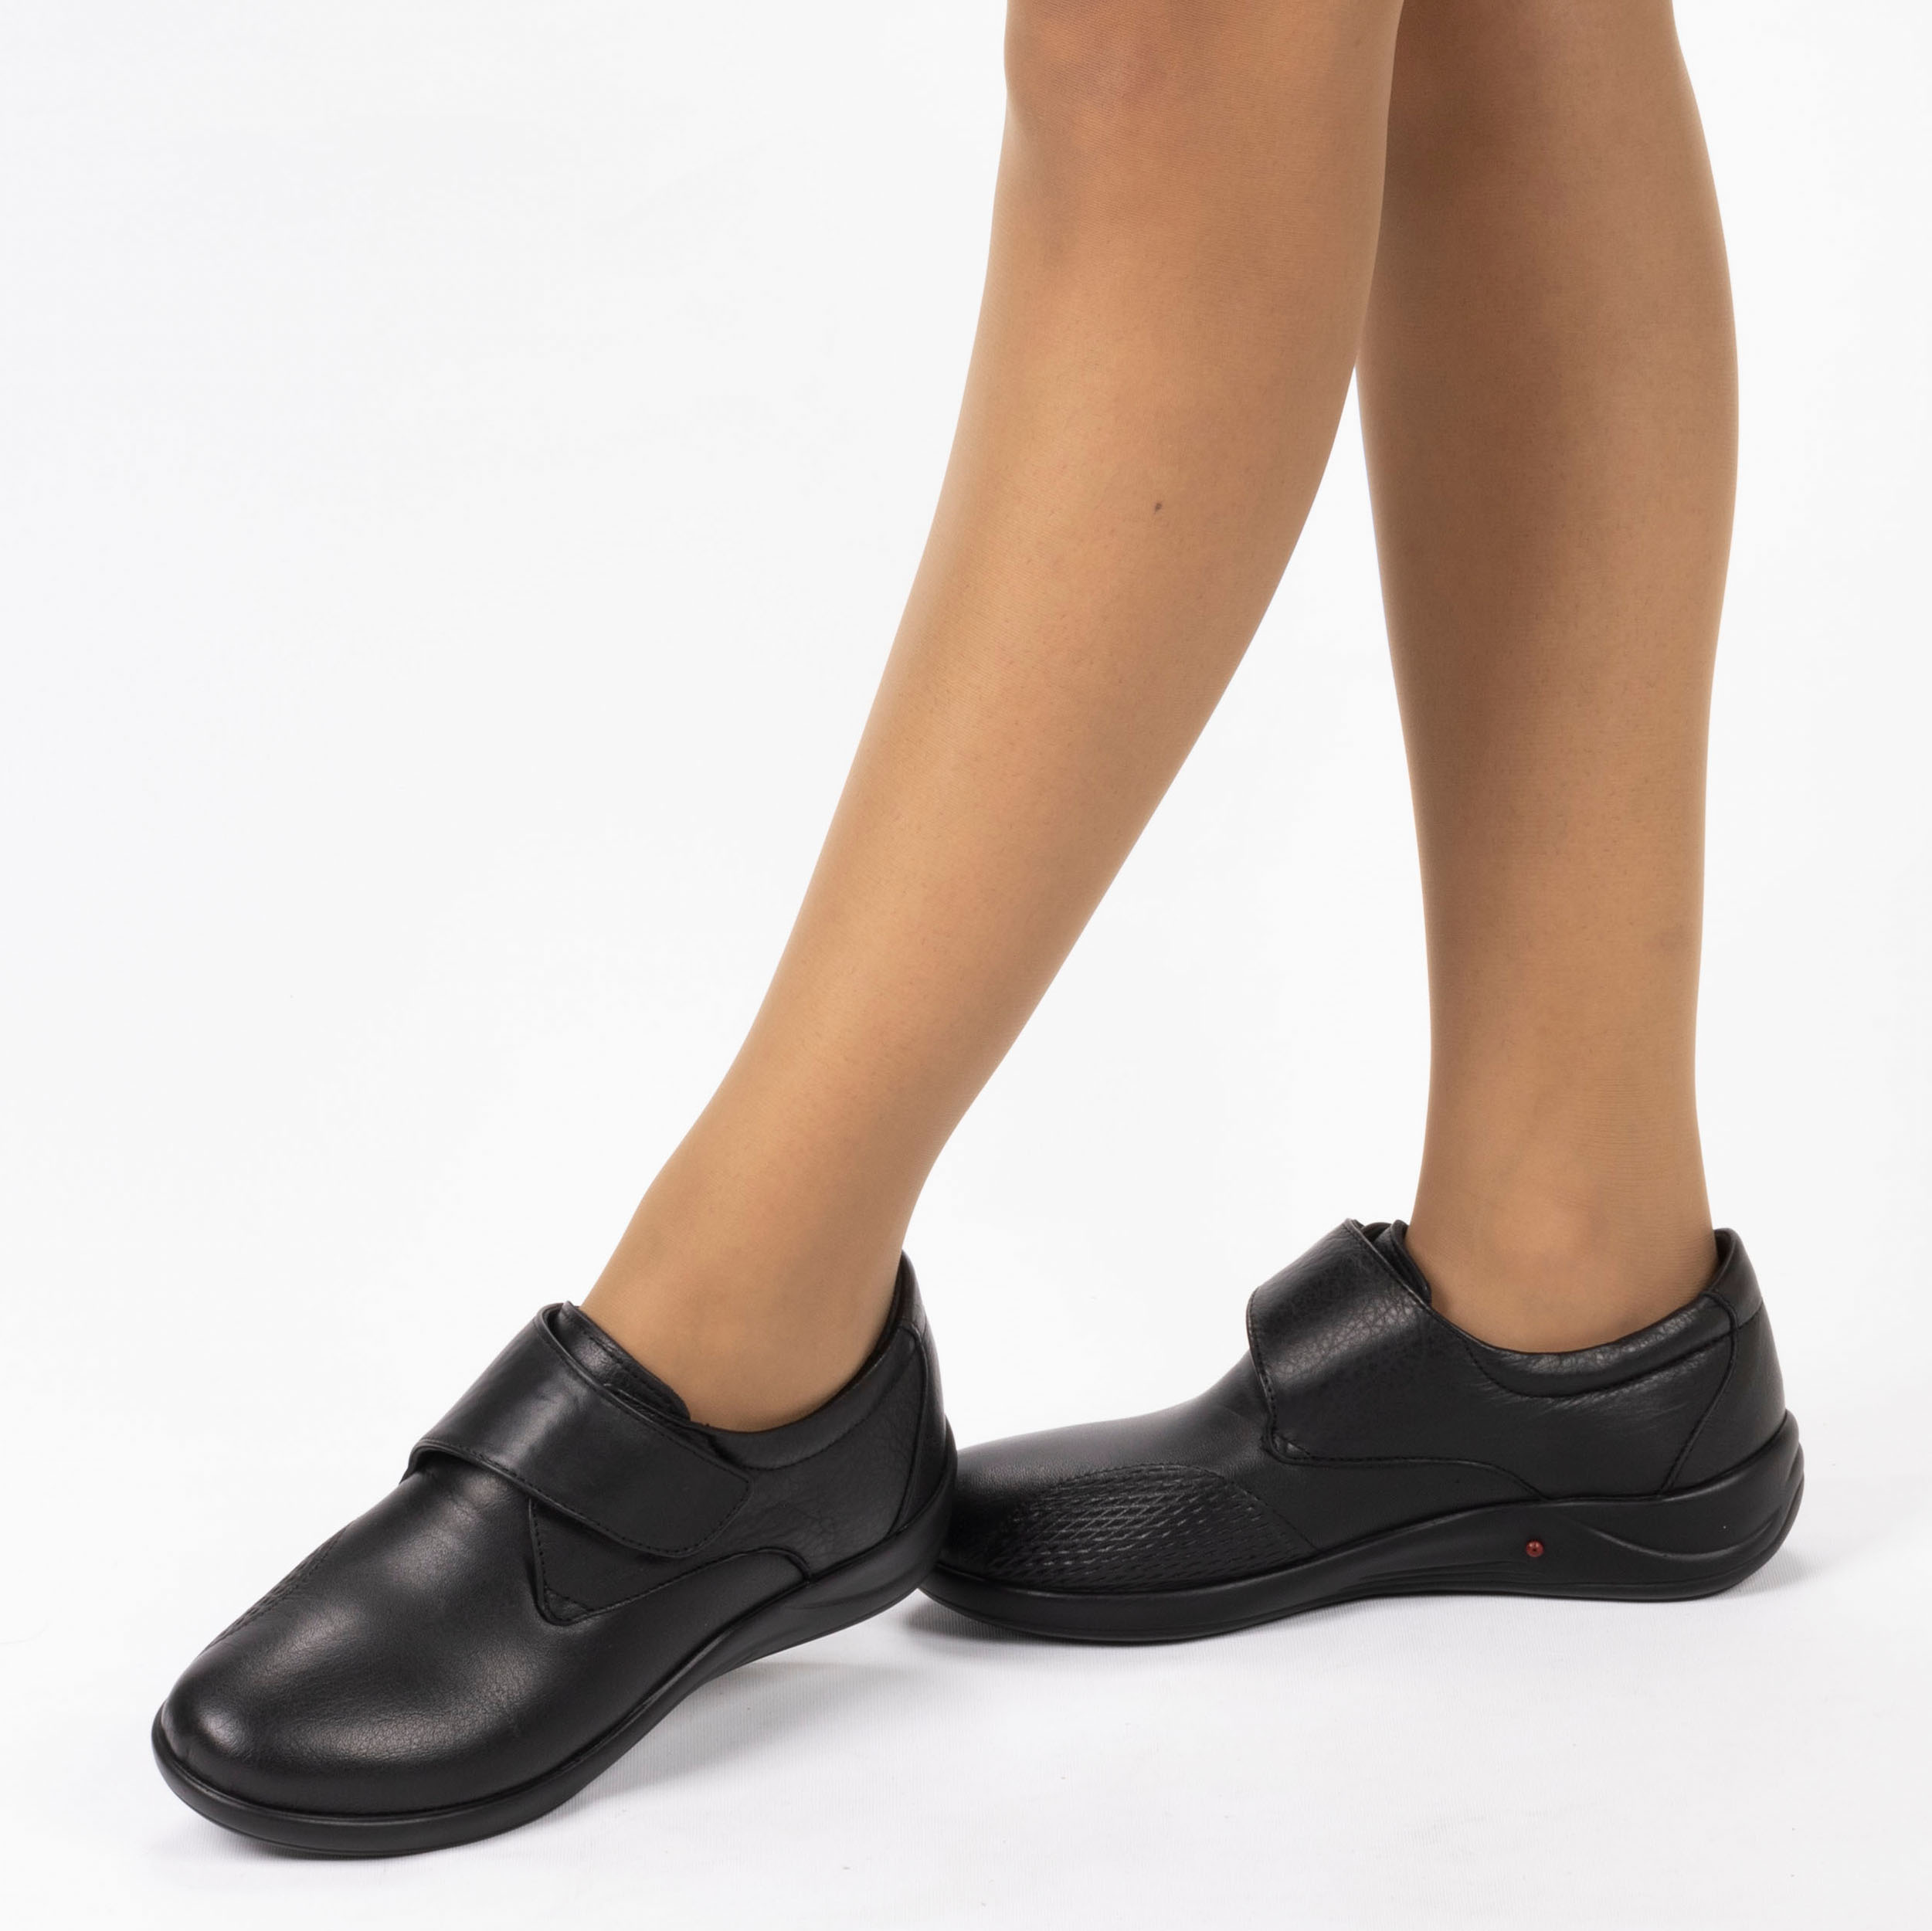 Kadın Hakiki Deri Anatomik Hafif Tasarım Topuk Yastıklı Cırt Cırtlı Kemik Çıkıntısı Konfort Ayakkabı, Renk: Siyah, Beden: 37